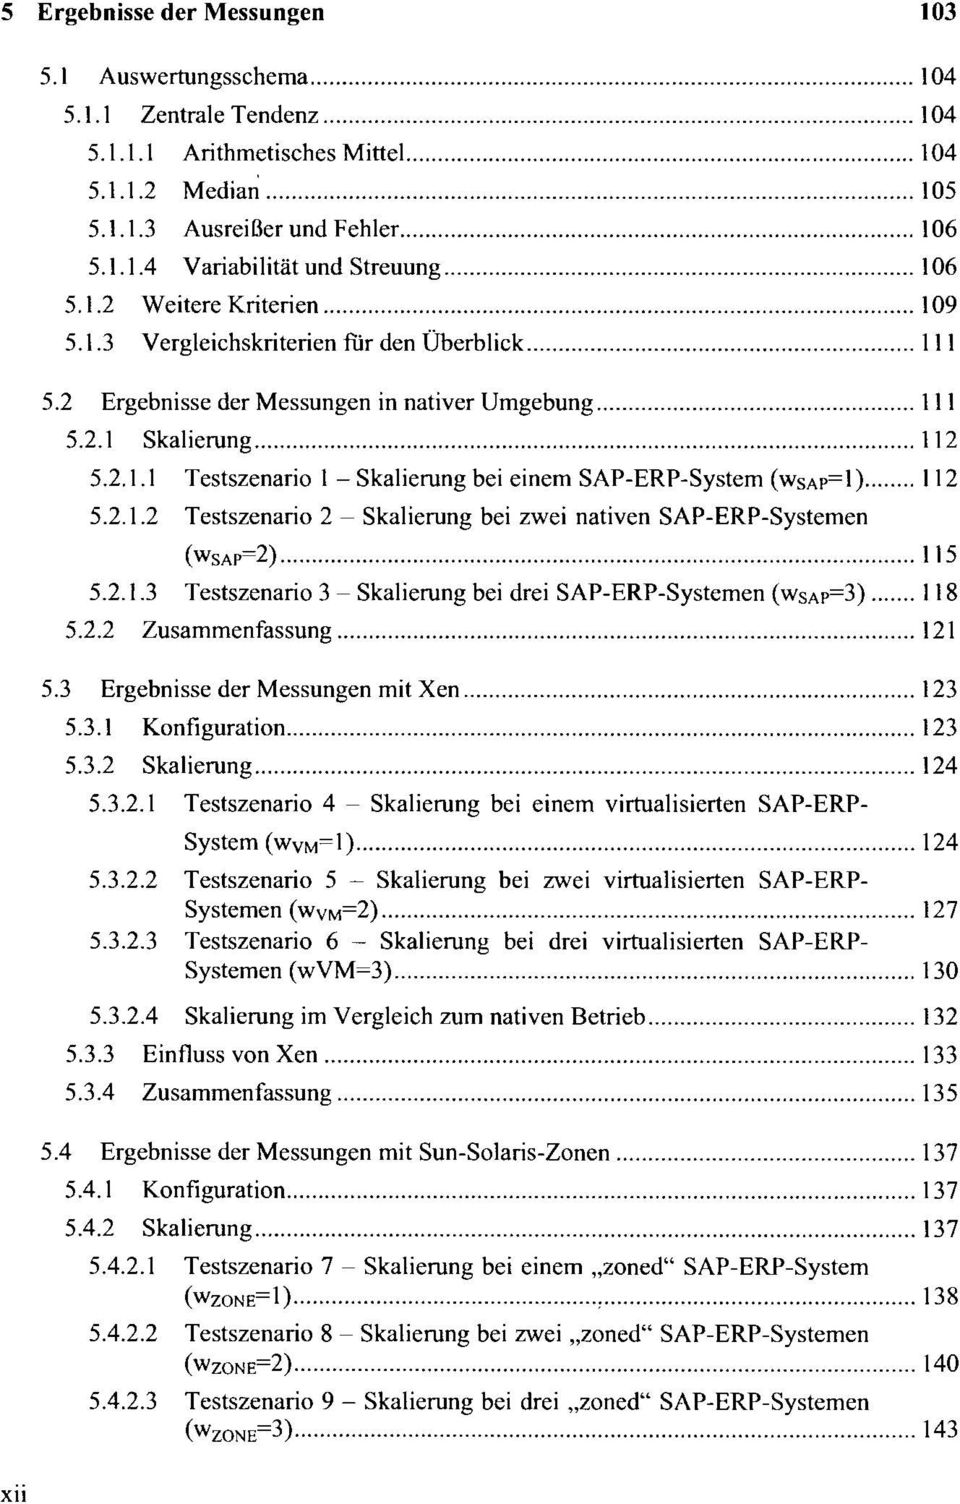 2.1.2 Testszenario 2 - Skalierung bei zwei nativen SAP-ERP-Systemen (WSAP=2) 115 5.2.1.3 Testszenario 3 - Skalierung bei drei SAP-ERP-Systemen (WSAP=3) 118 5.2.2 Zusammenfassung 121 5.